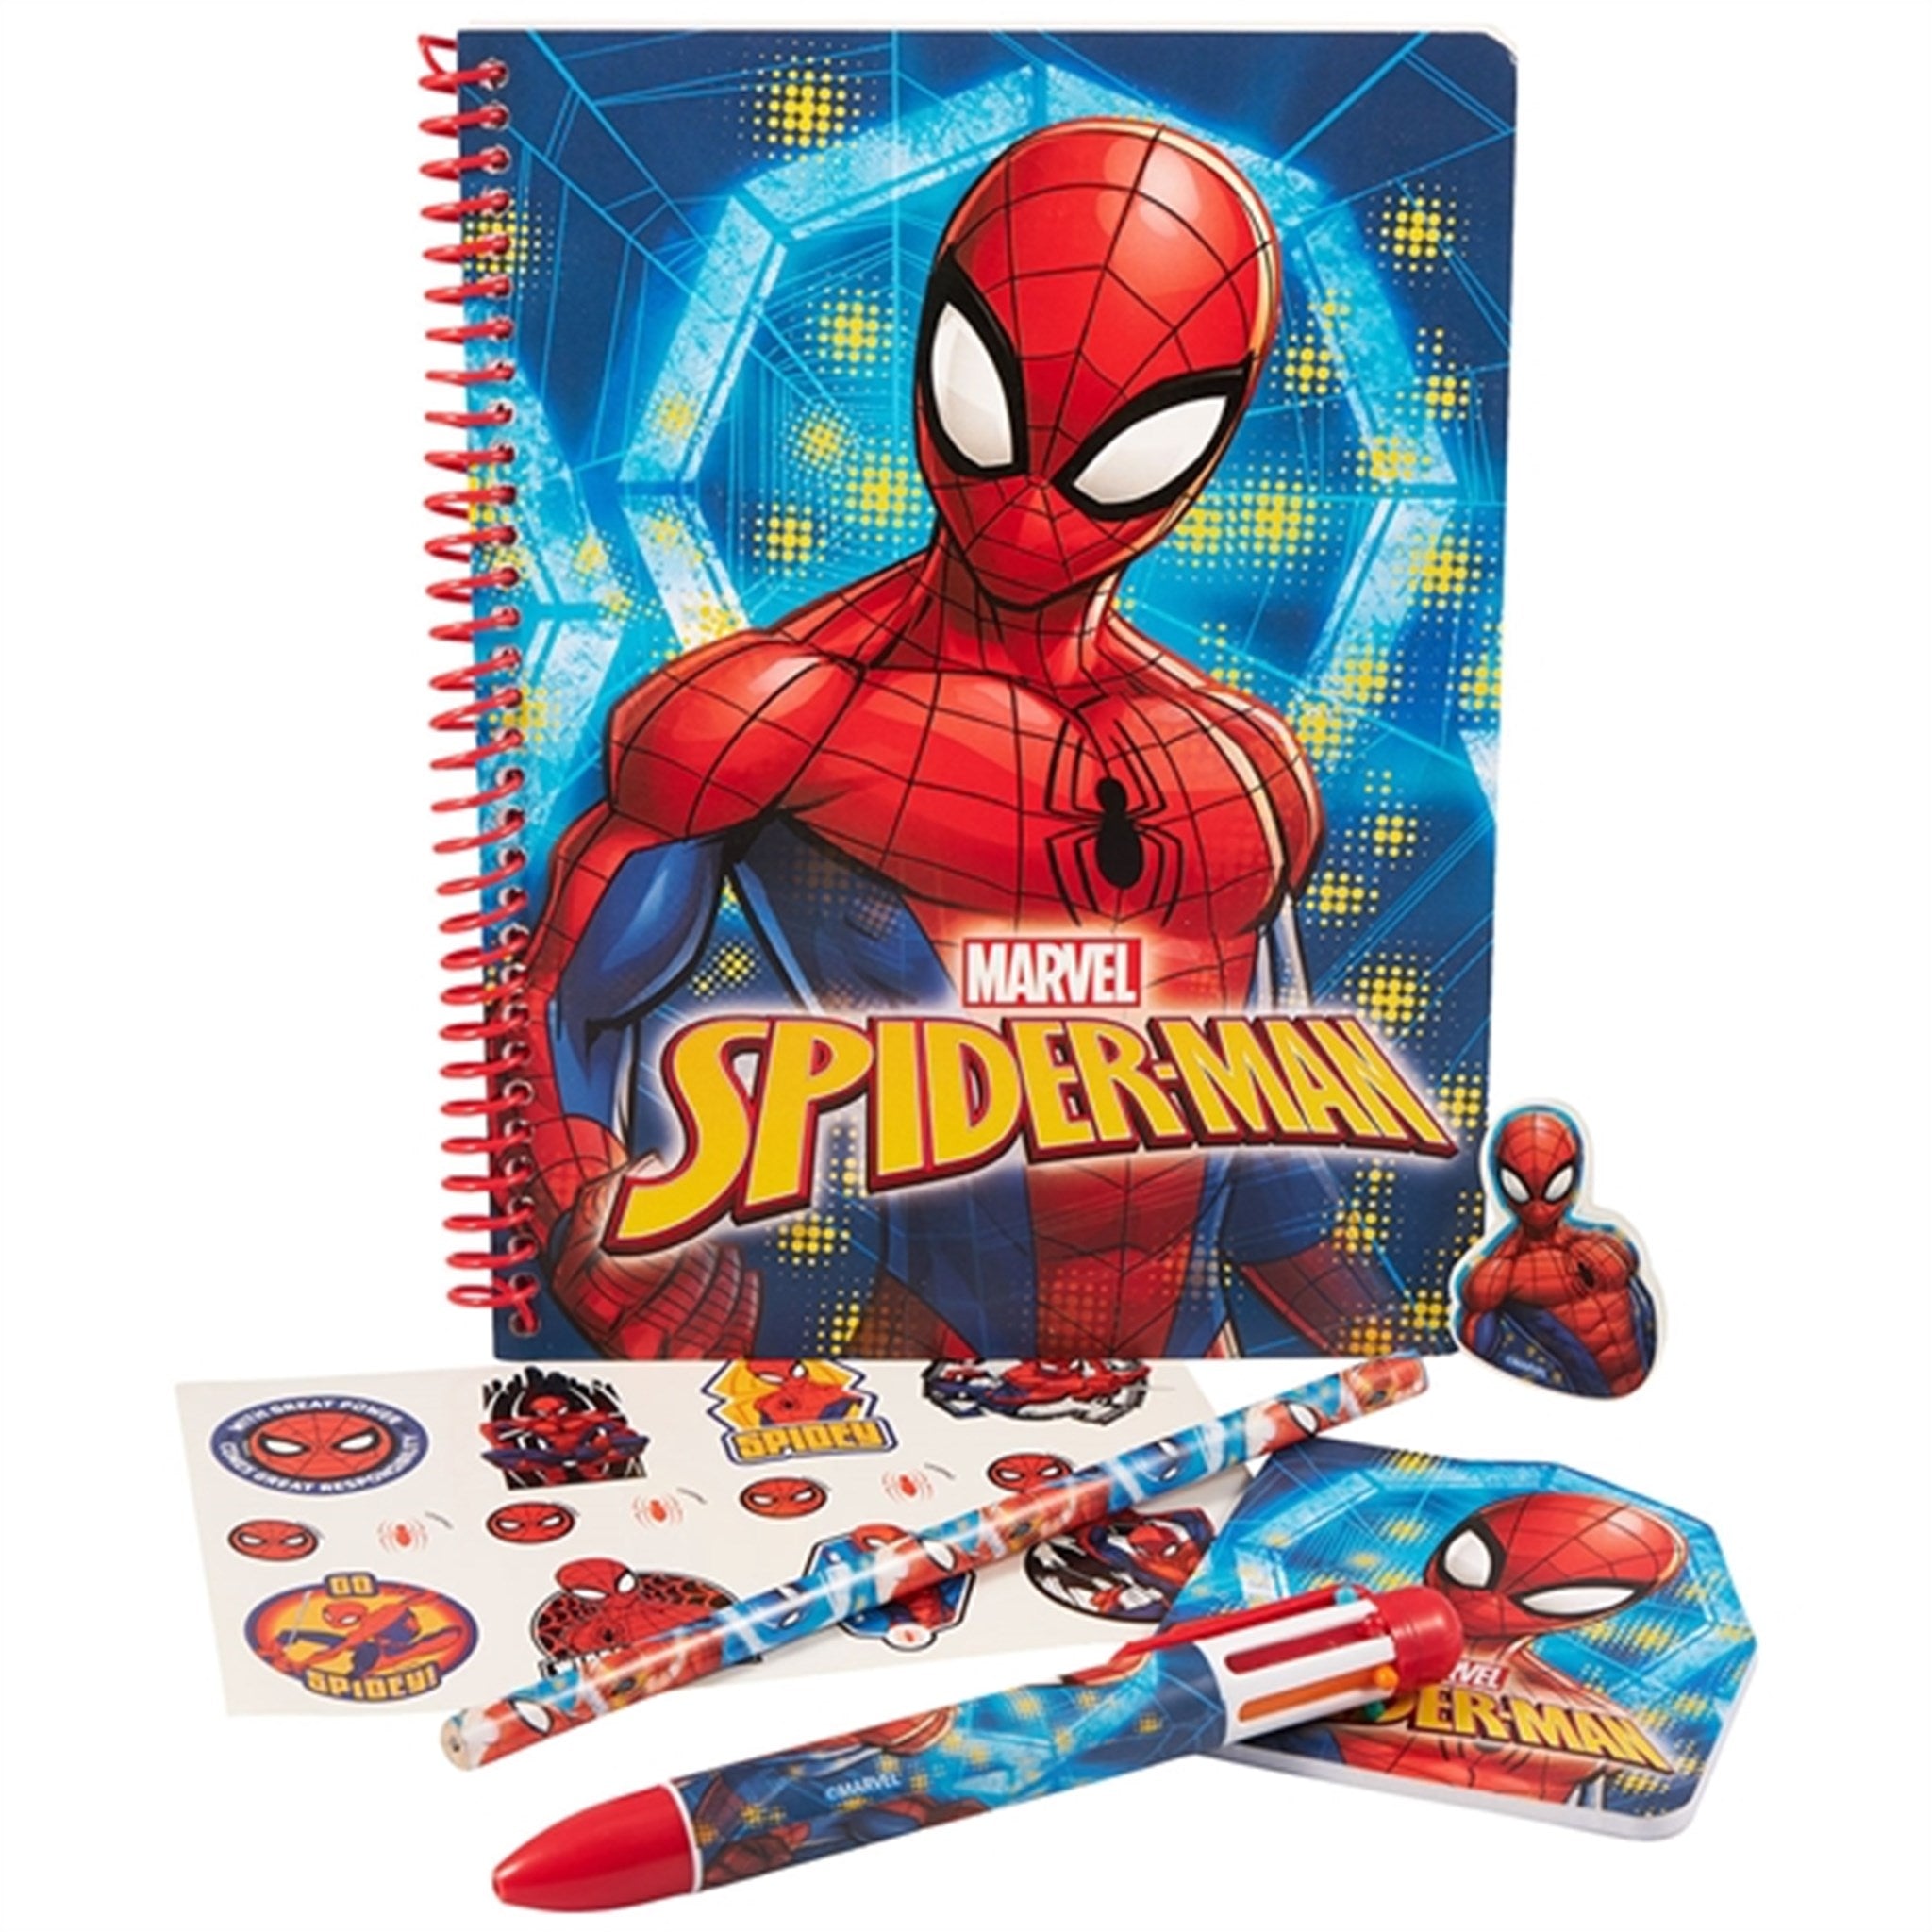 Euromic Spiderman Writing Set